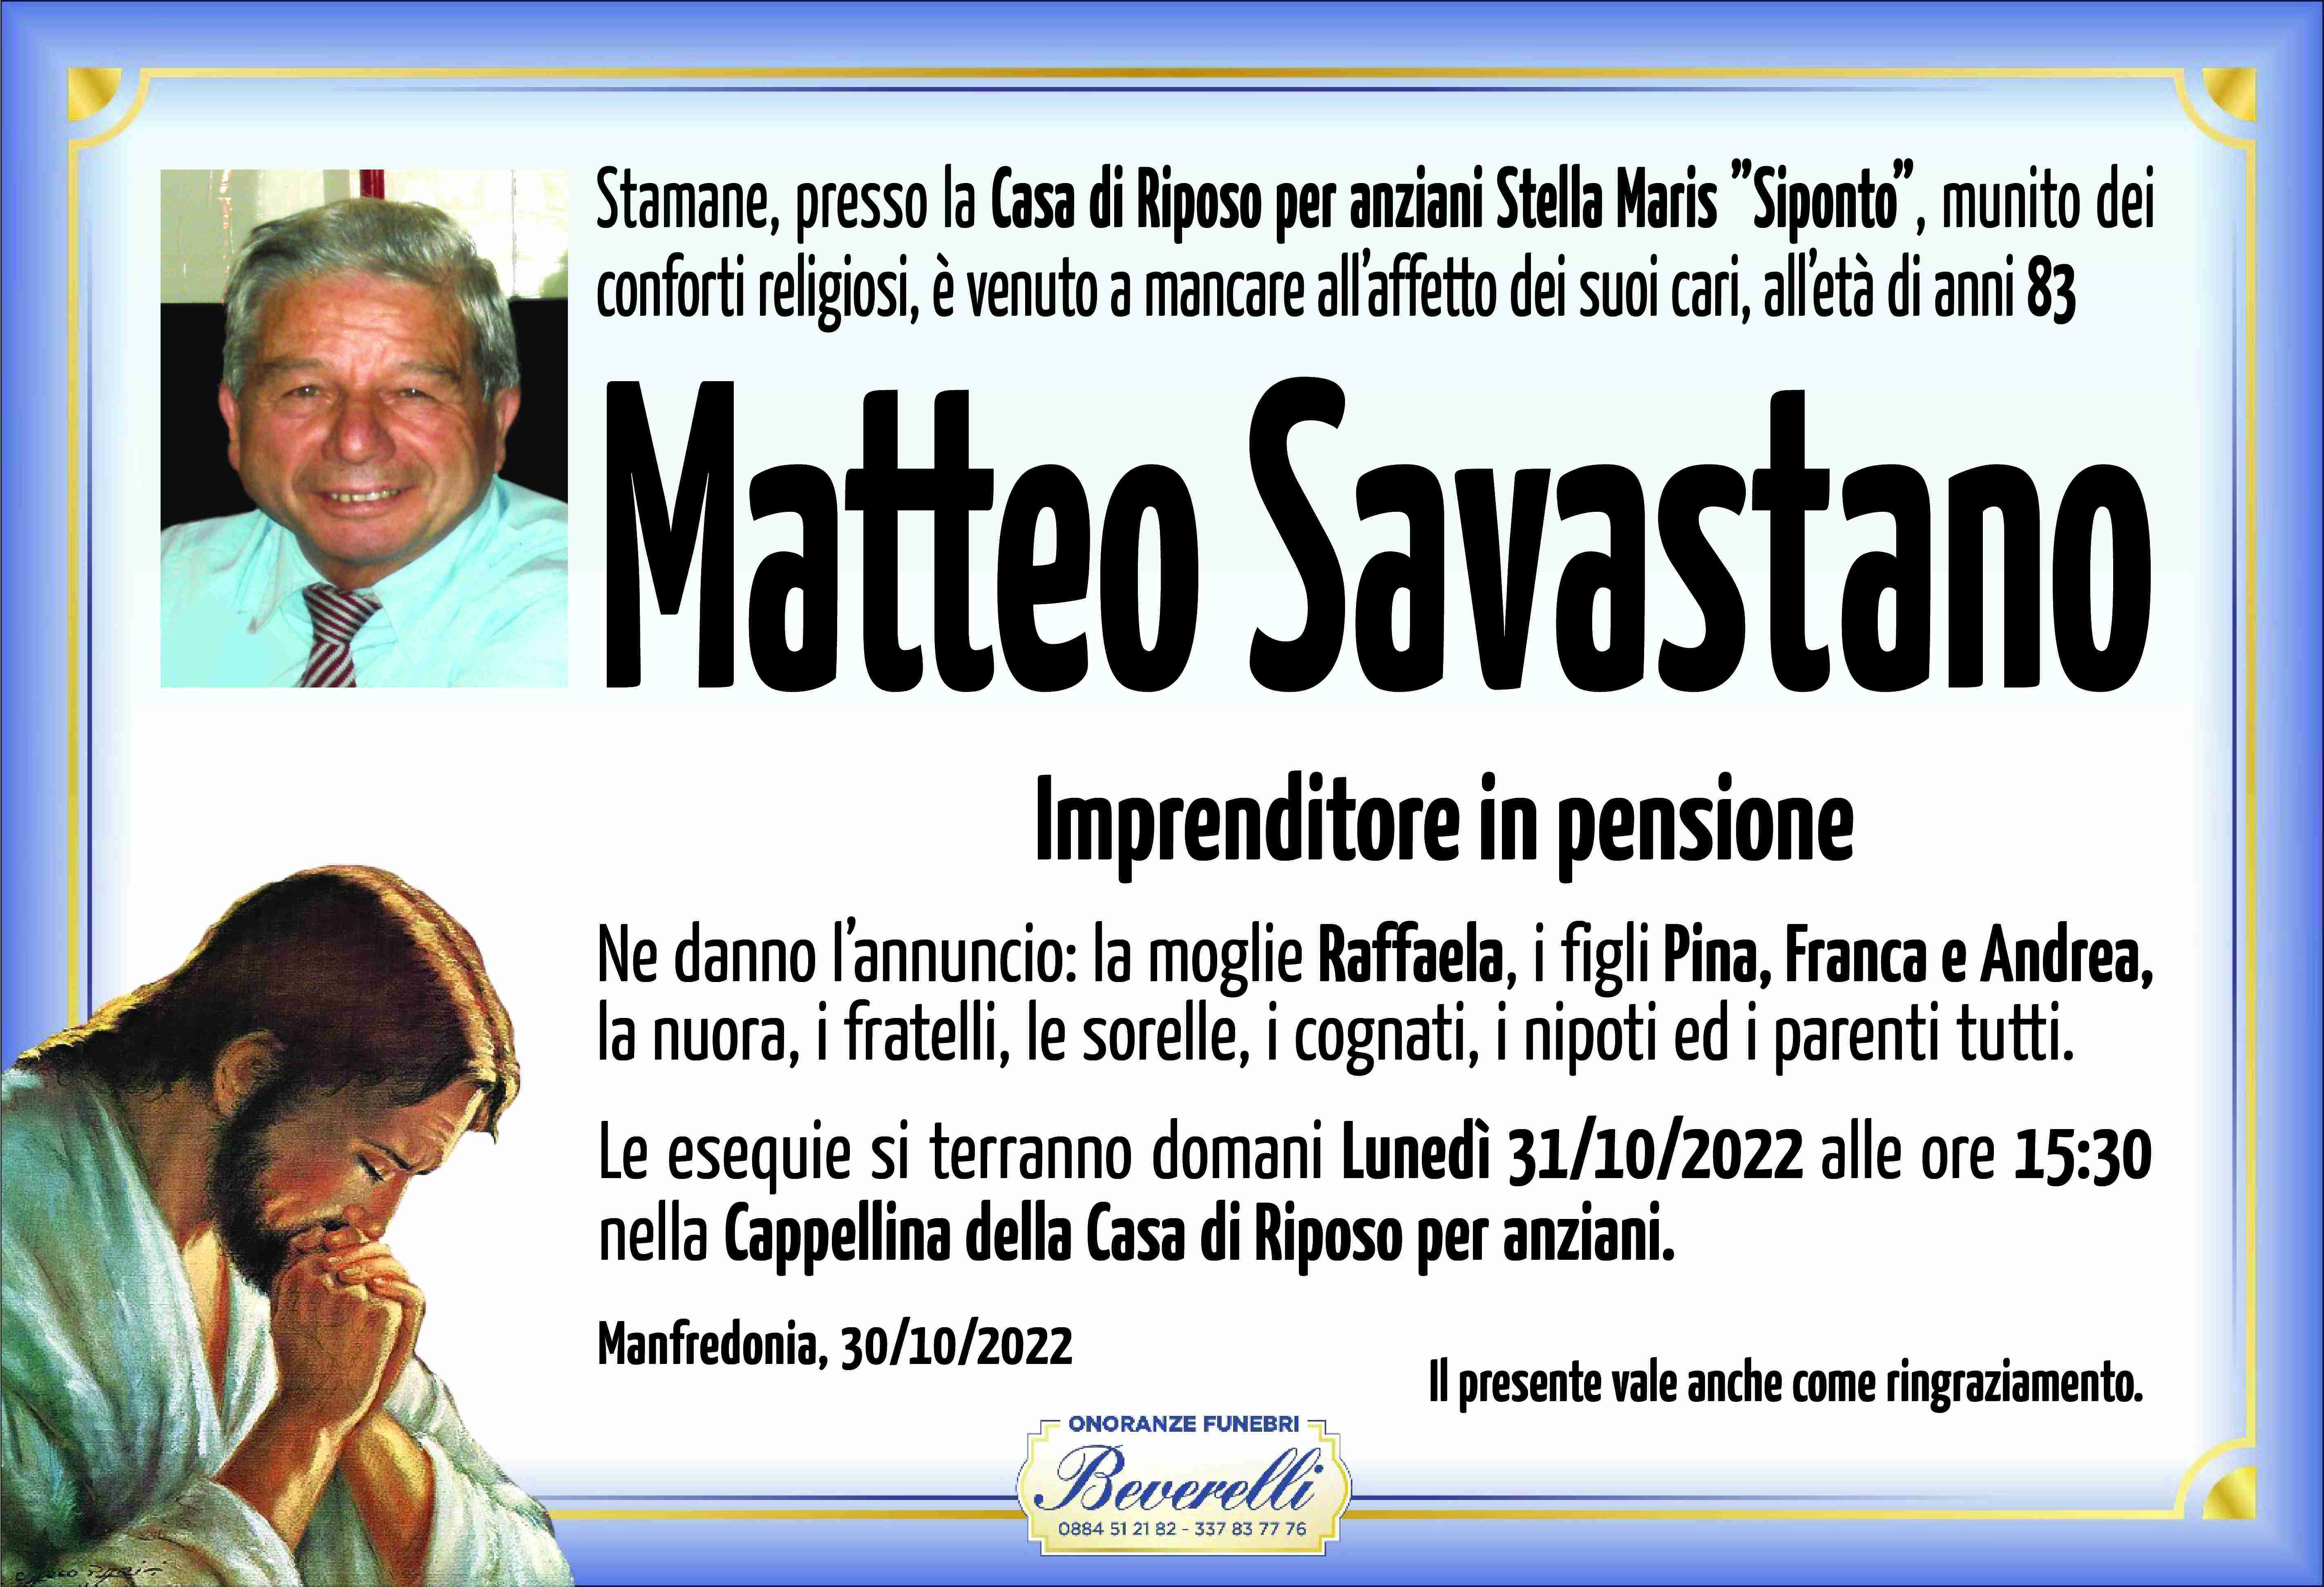 Matteo Savastano